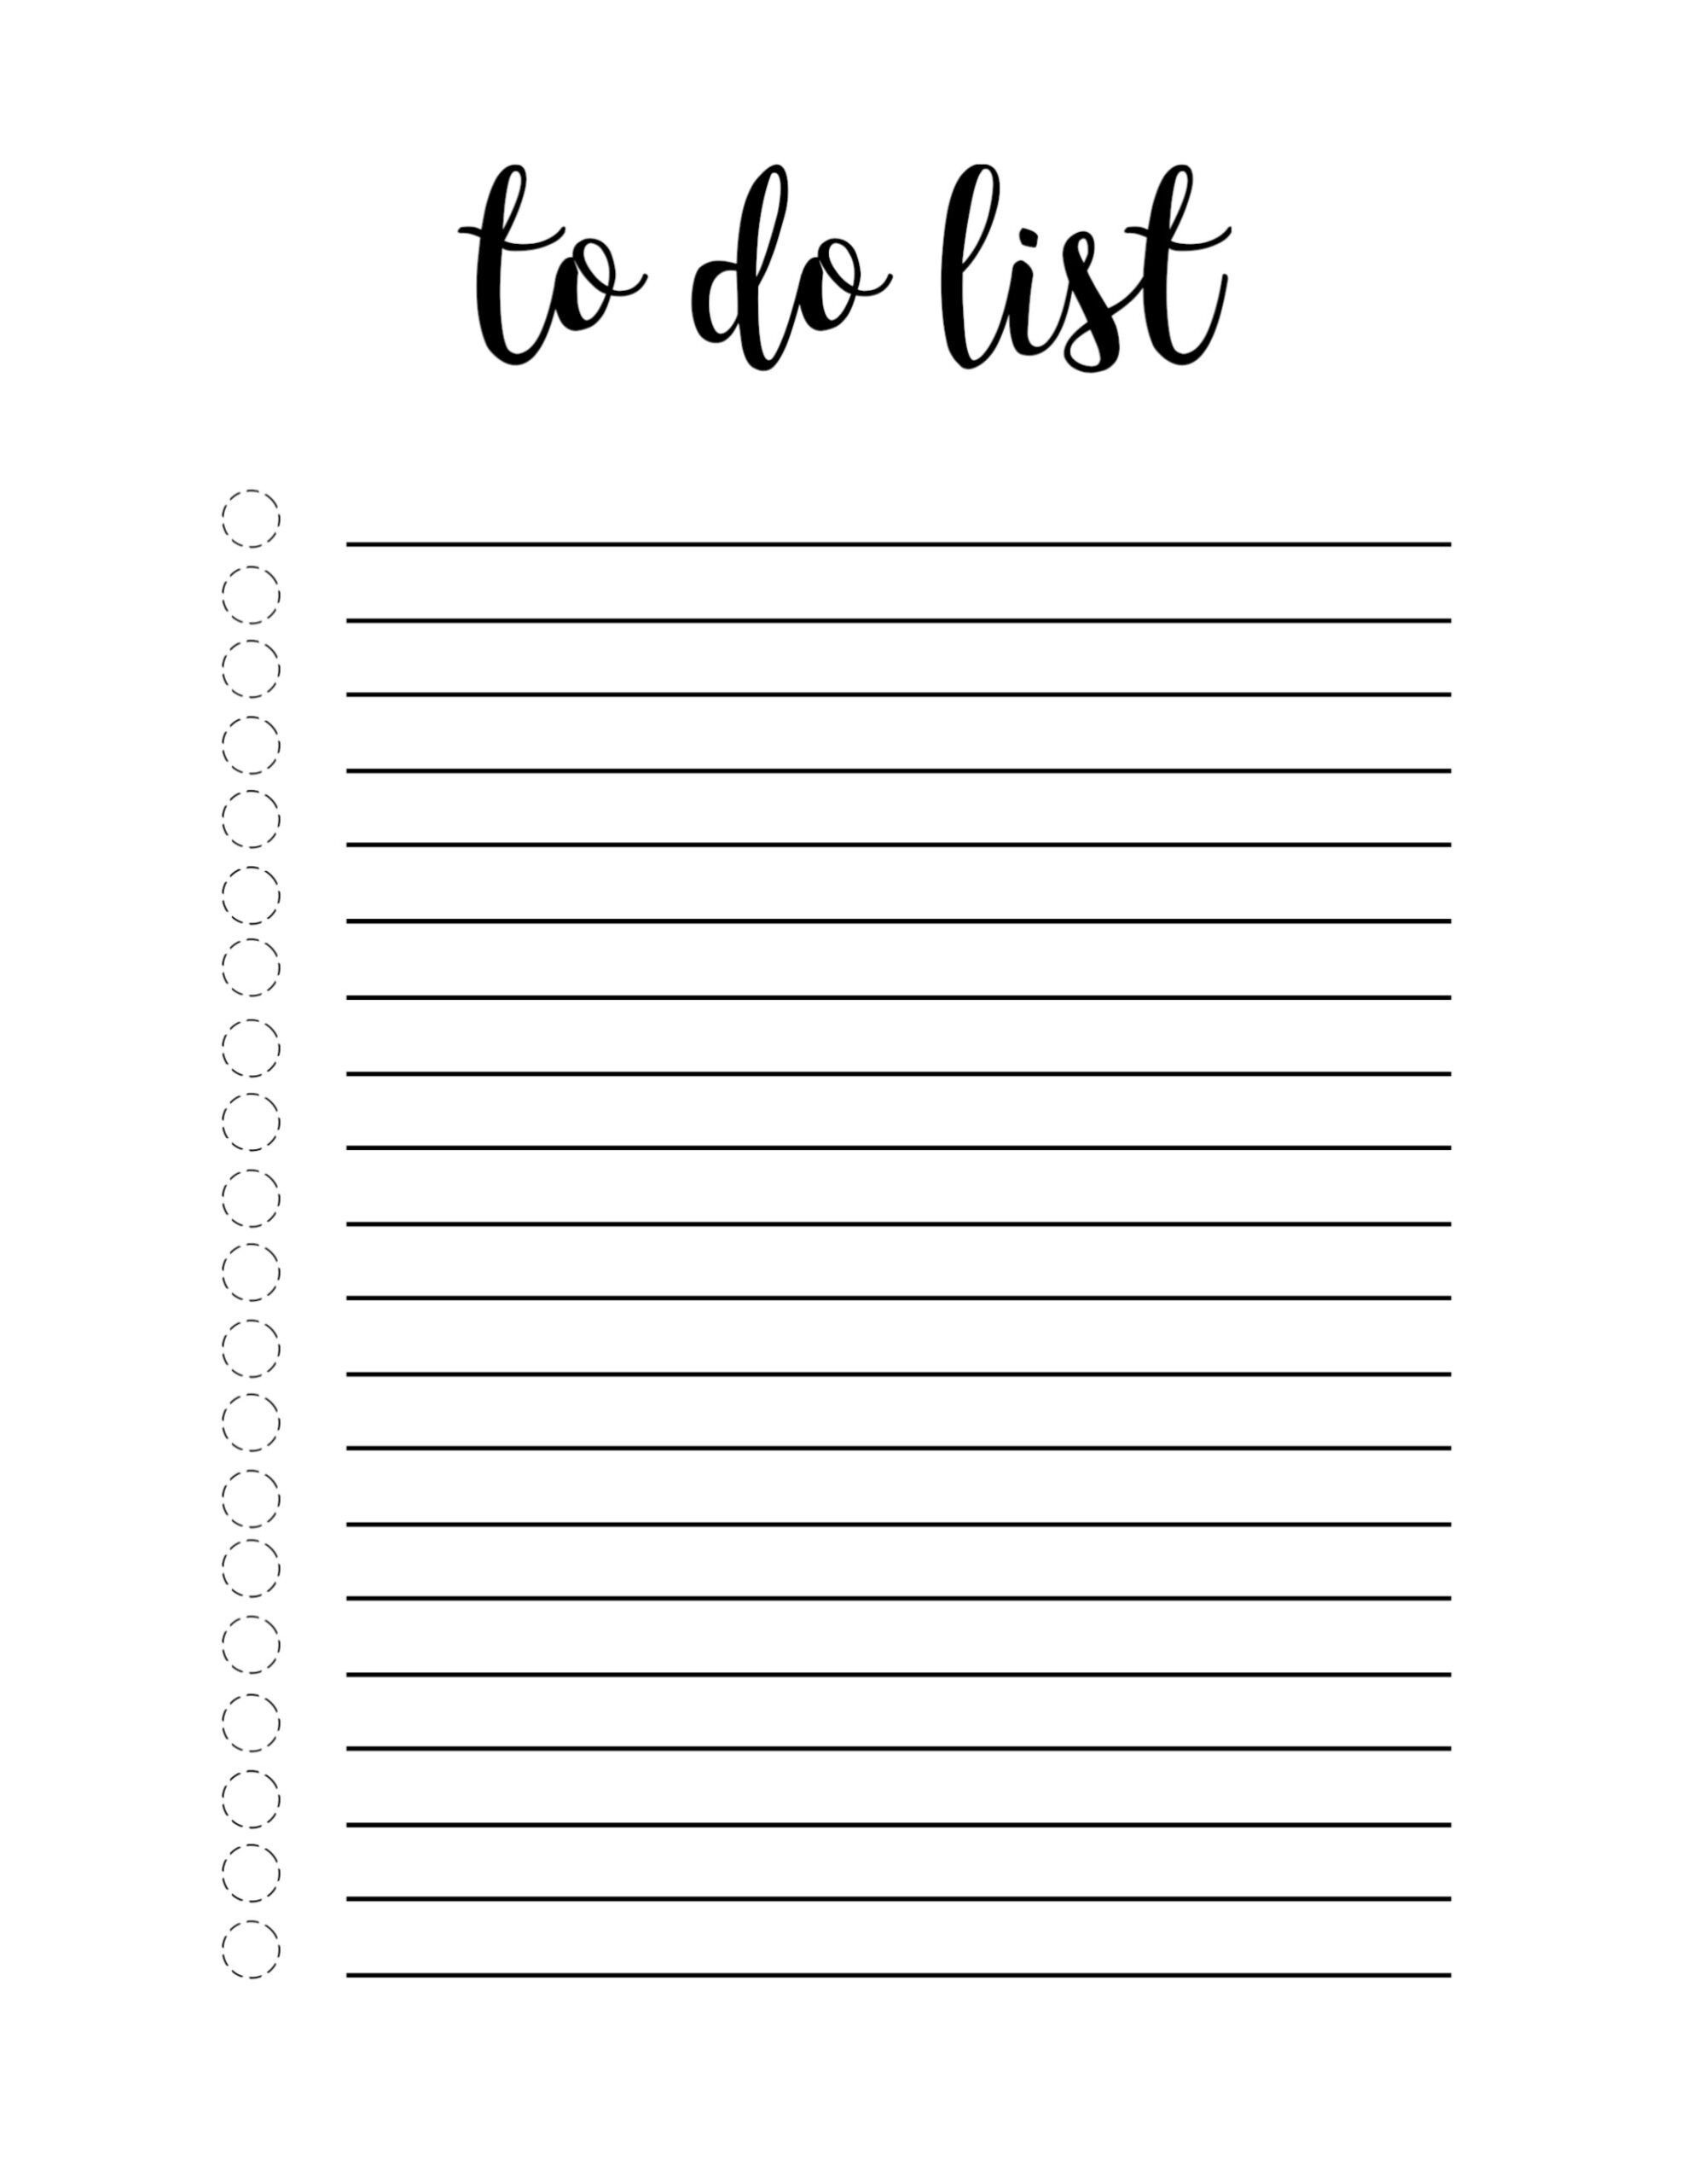 Idee Von Carrie Herron Auf Organization To Do Liste Vorlage Kalender 